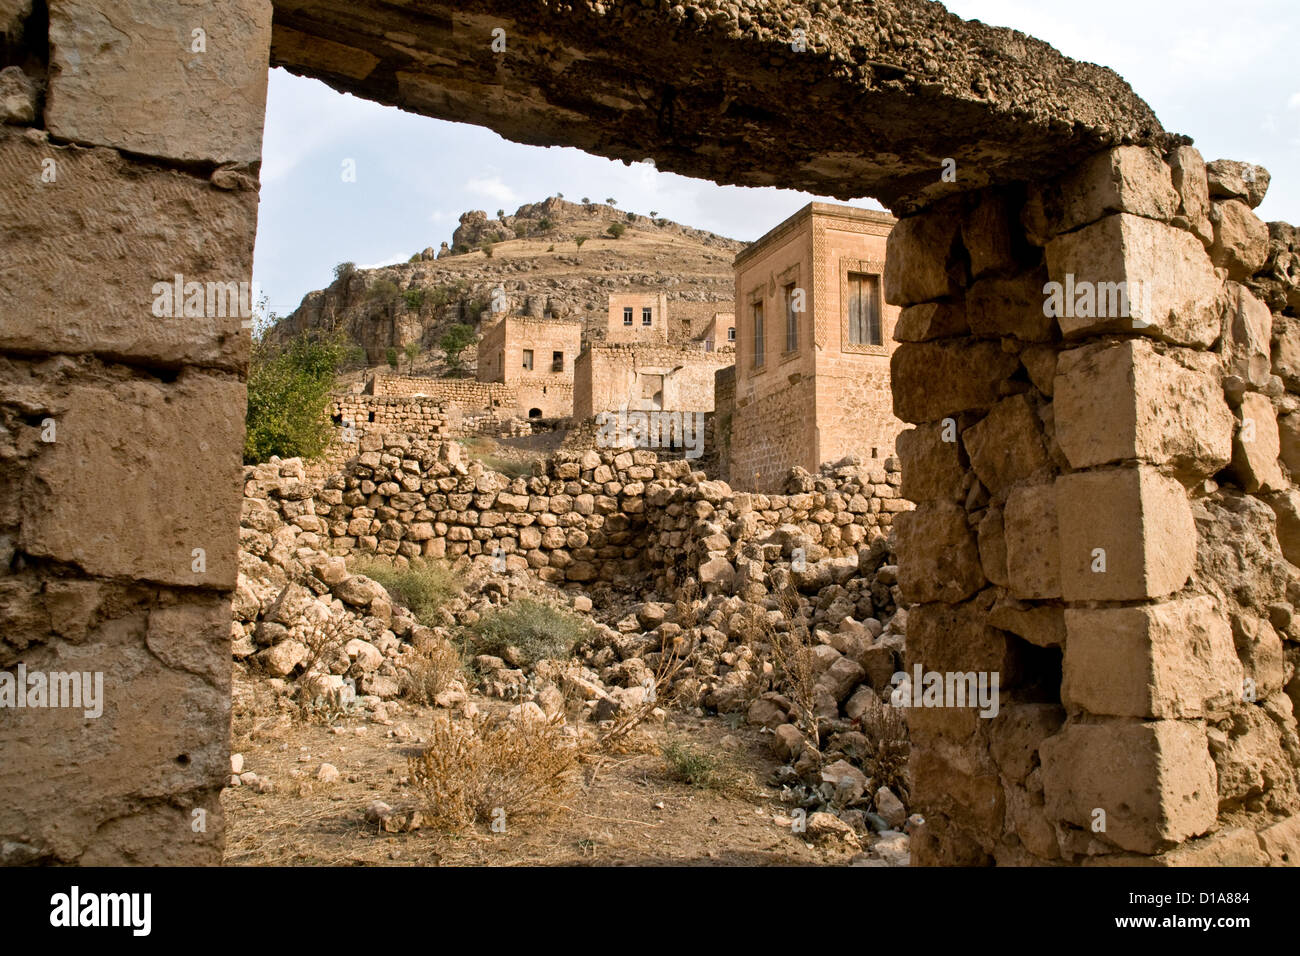 Maisons en pierre couleur miel dans l'ancien village de Dereici, dans la région de Tur Abdin syriaque le sud-est de la Turquie. Banque D'Images